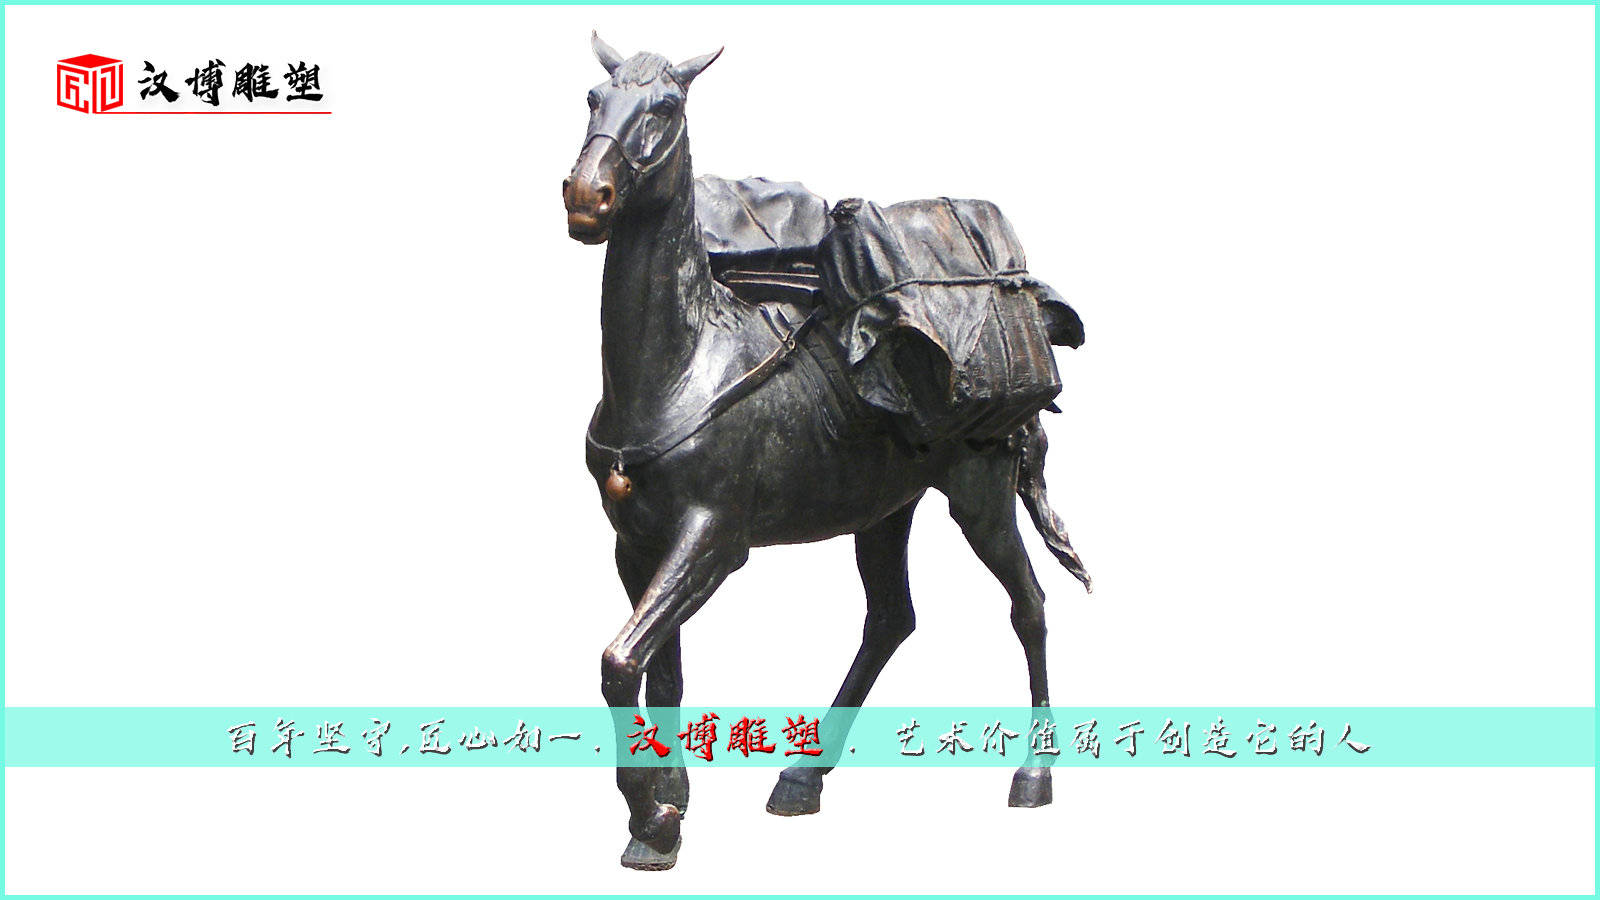 茶马古道文化雕像